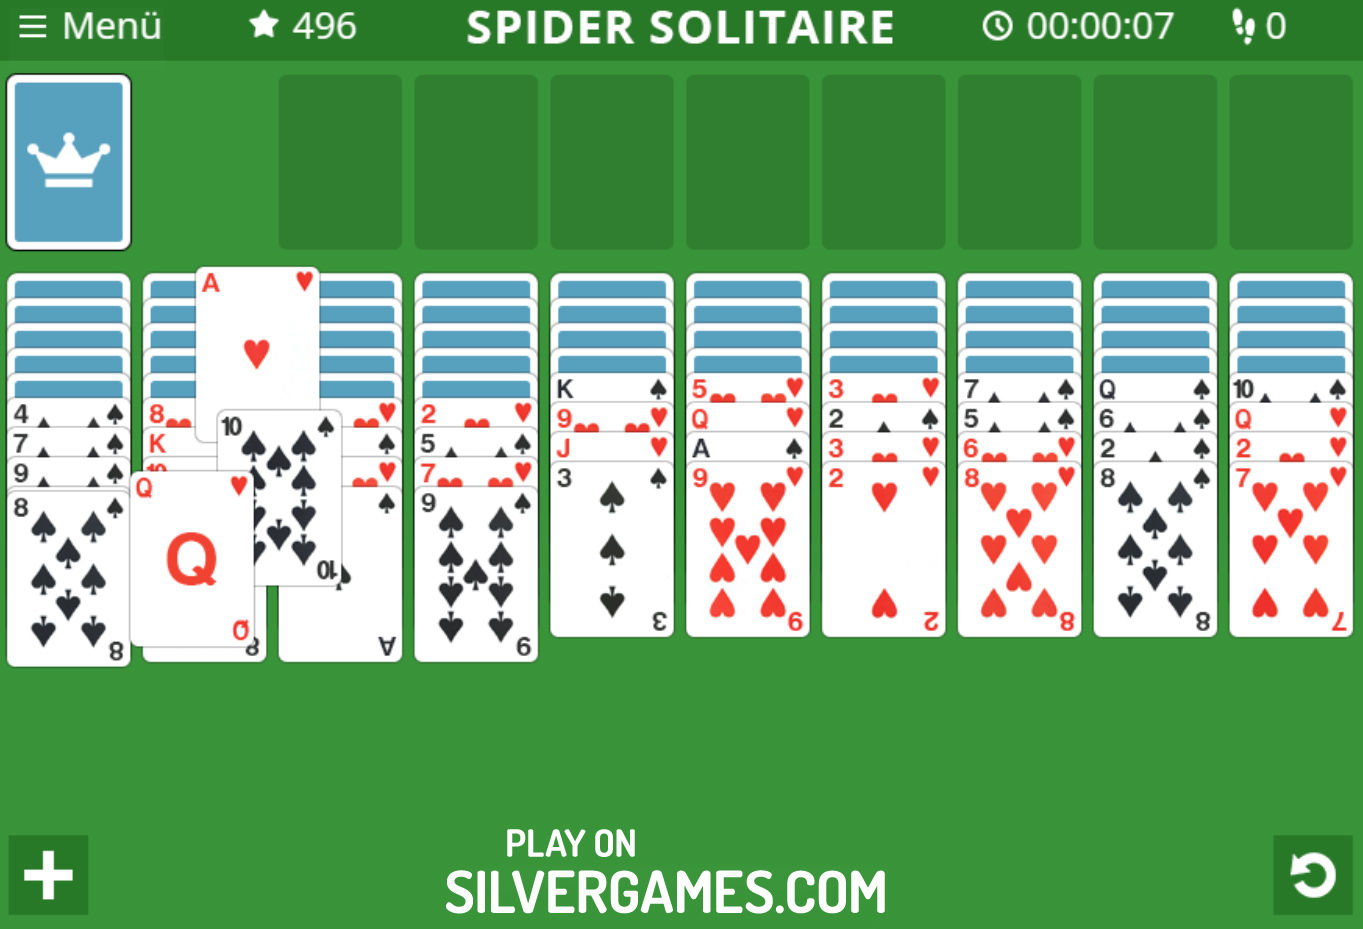 Spider Solitaire - Jogo Online - Joga Agora